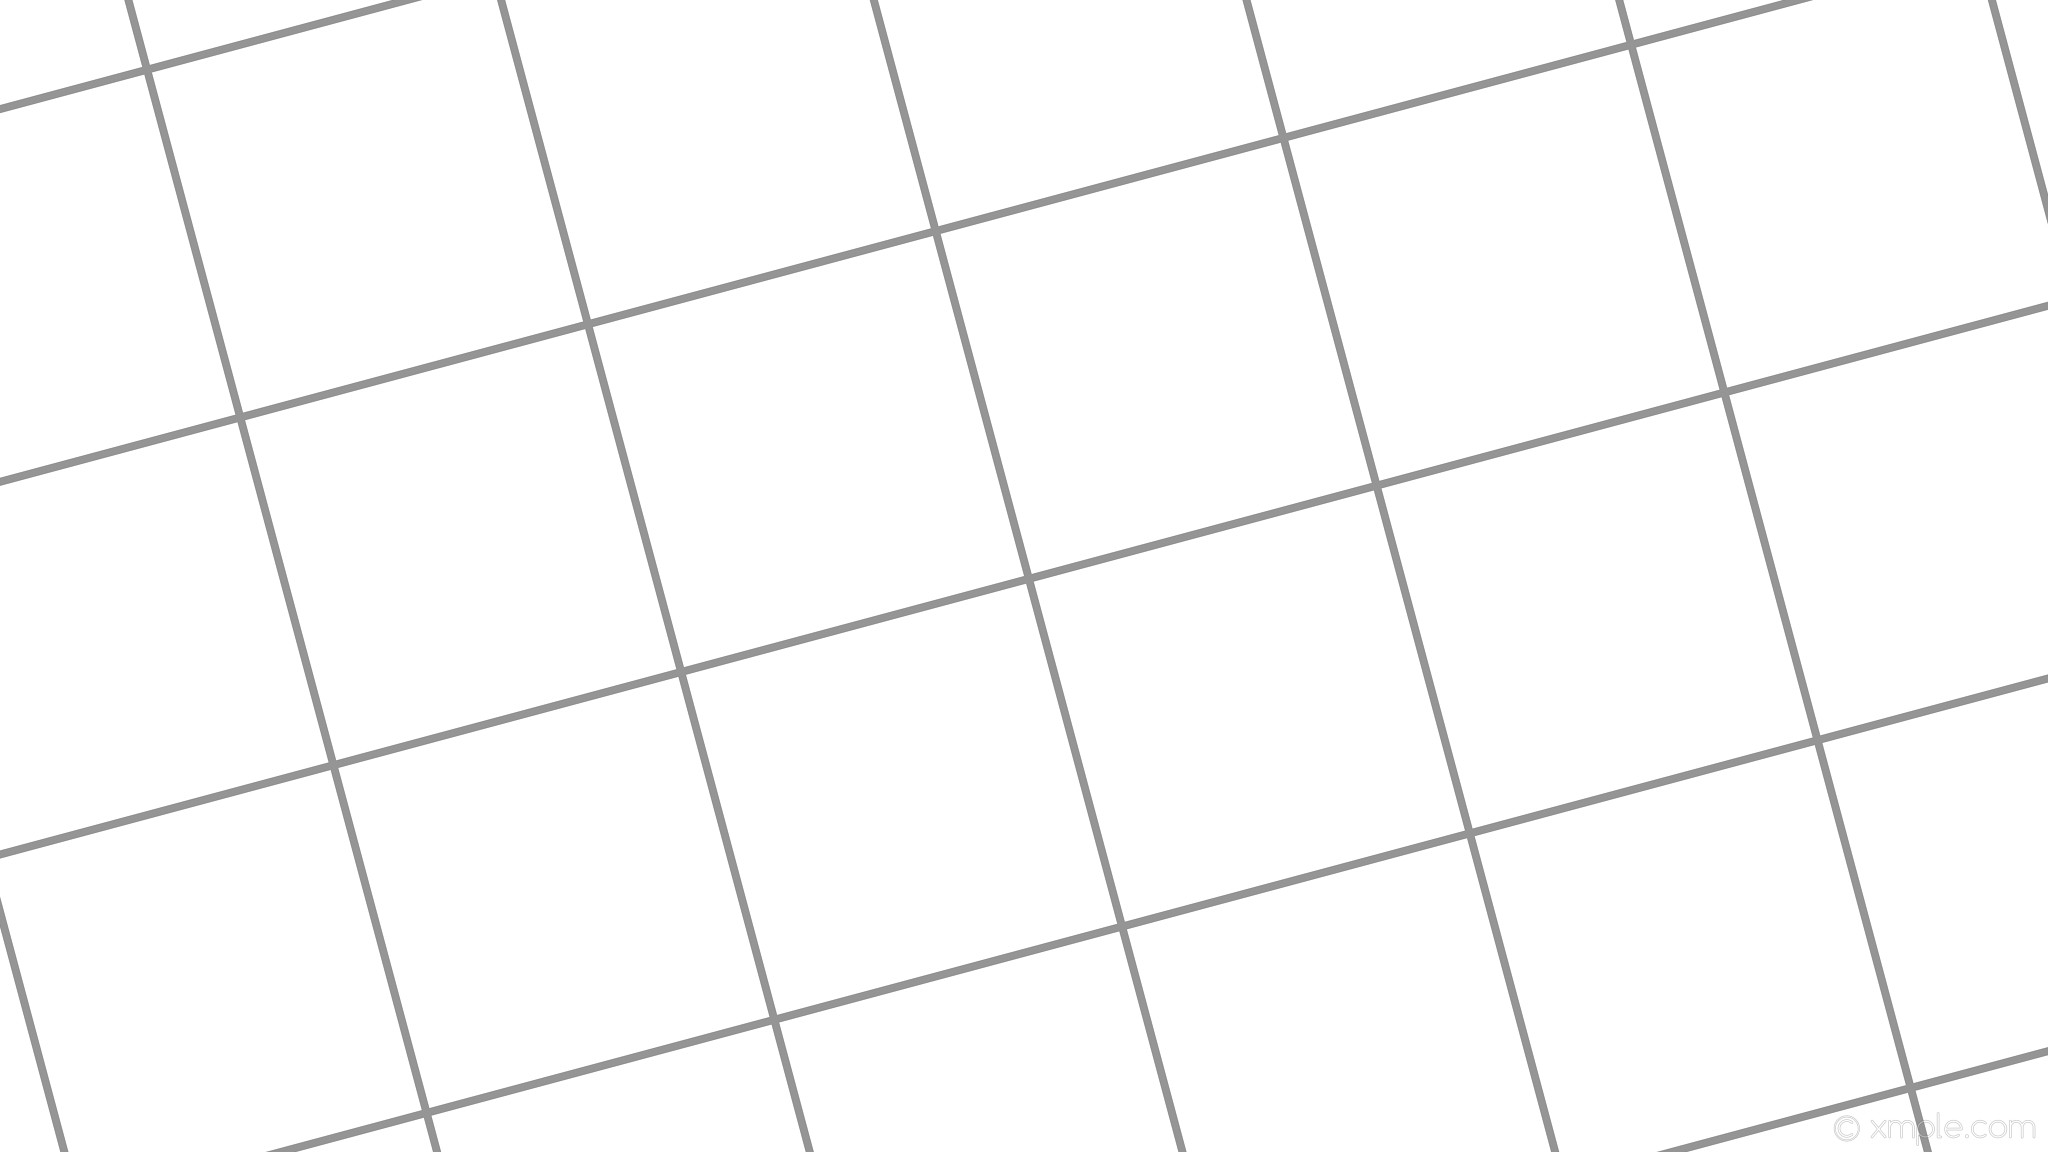 2048x1152 wallpaper graph paper grey white grid dim gray #ffffff #696969 15Â° 8px 360px